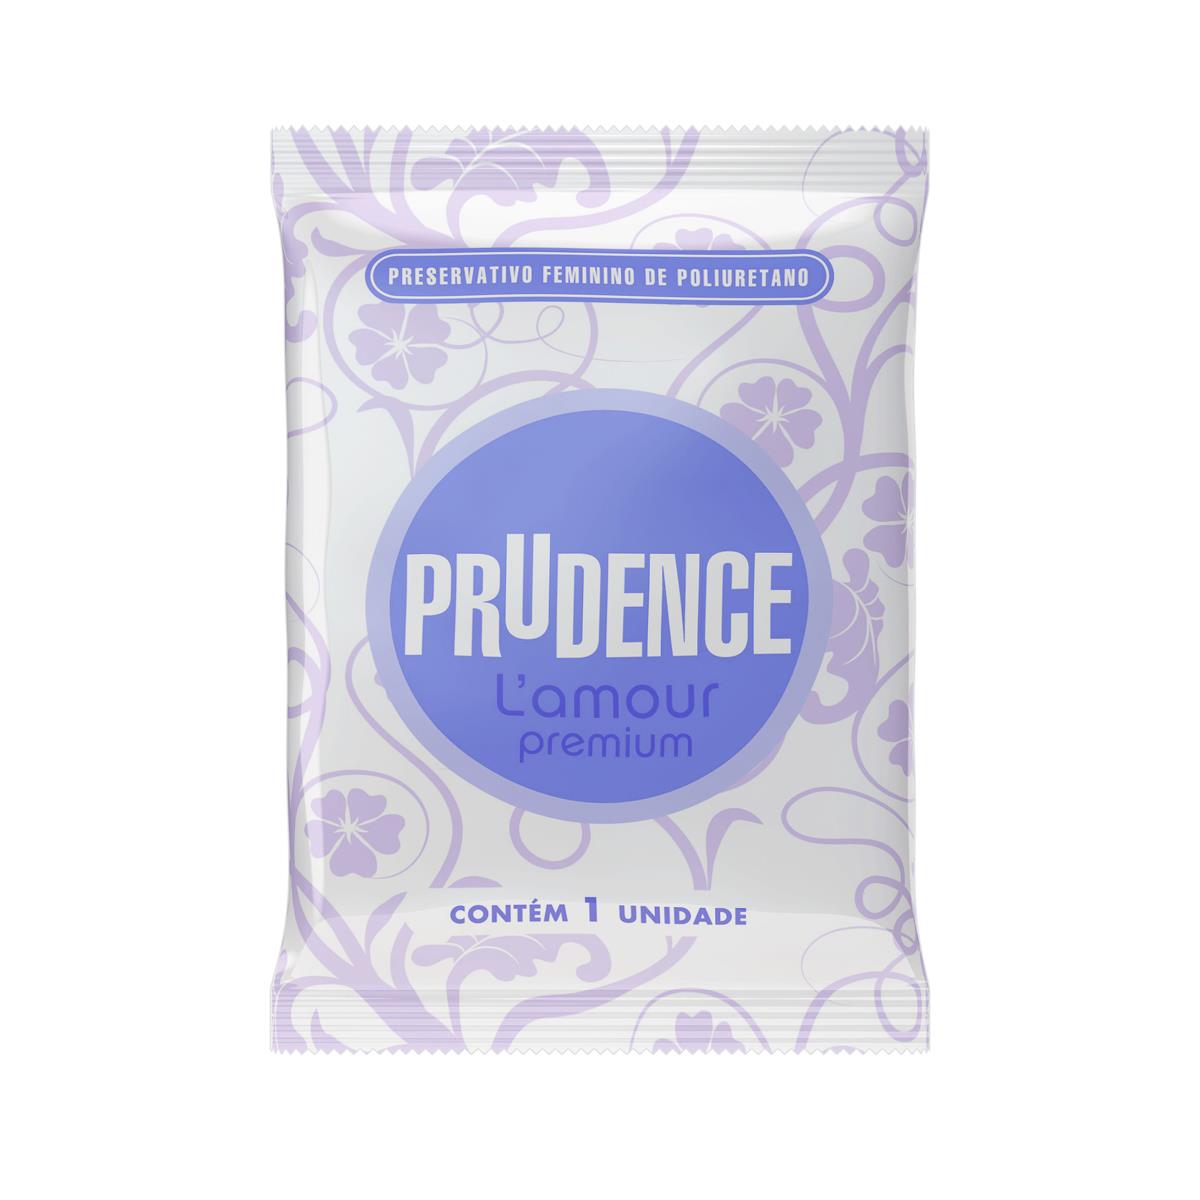 Preservativo Feminino L'amour Premium 2und Prudence